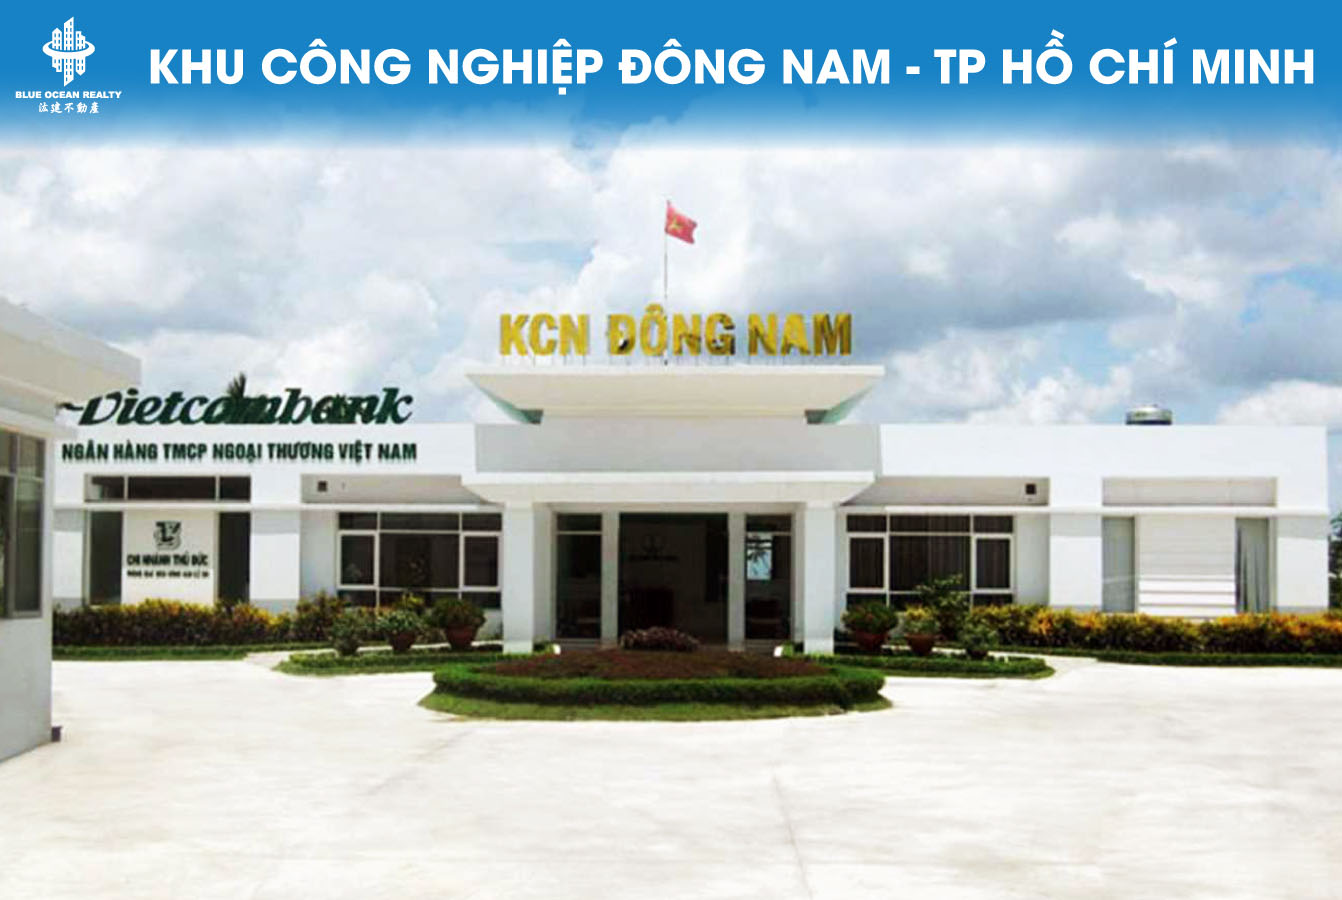 Khu công nghiệp Đông Nam - TP Hồ Chí Minh